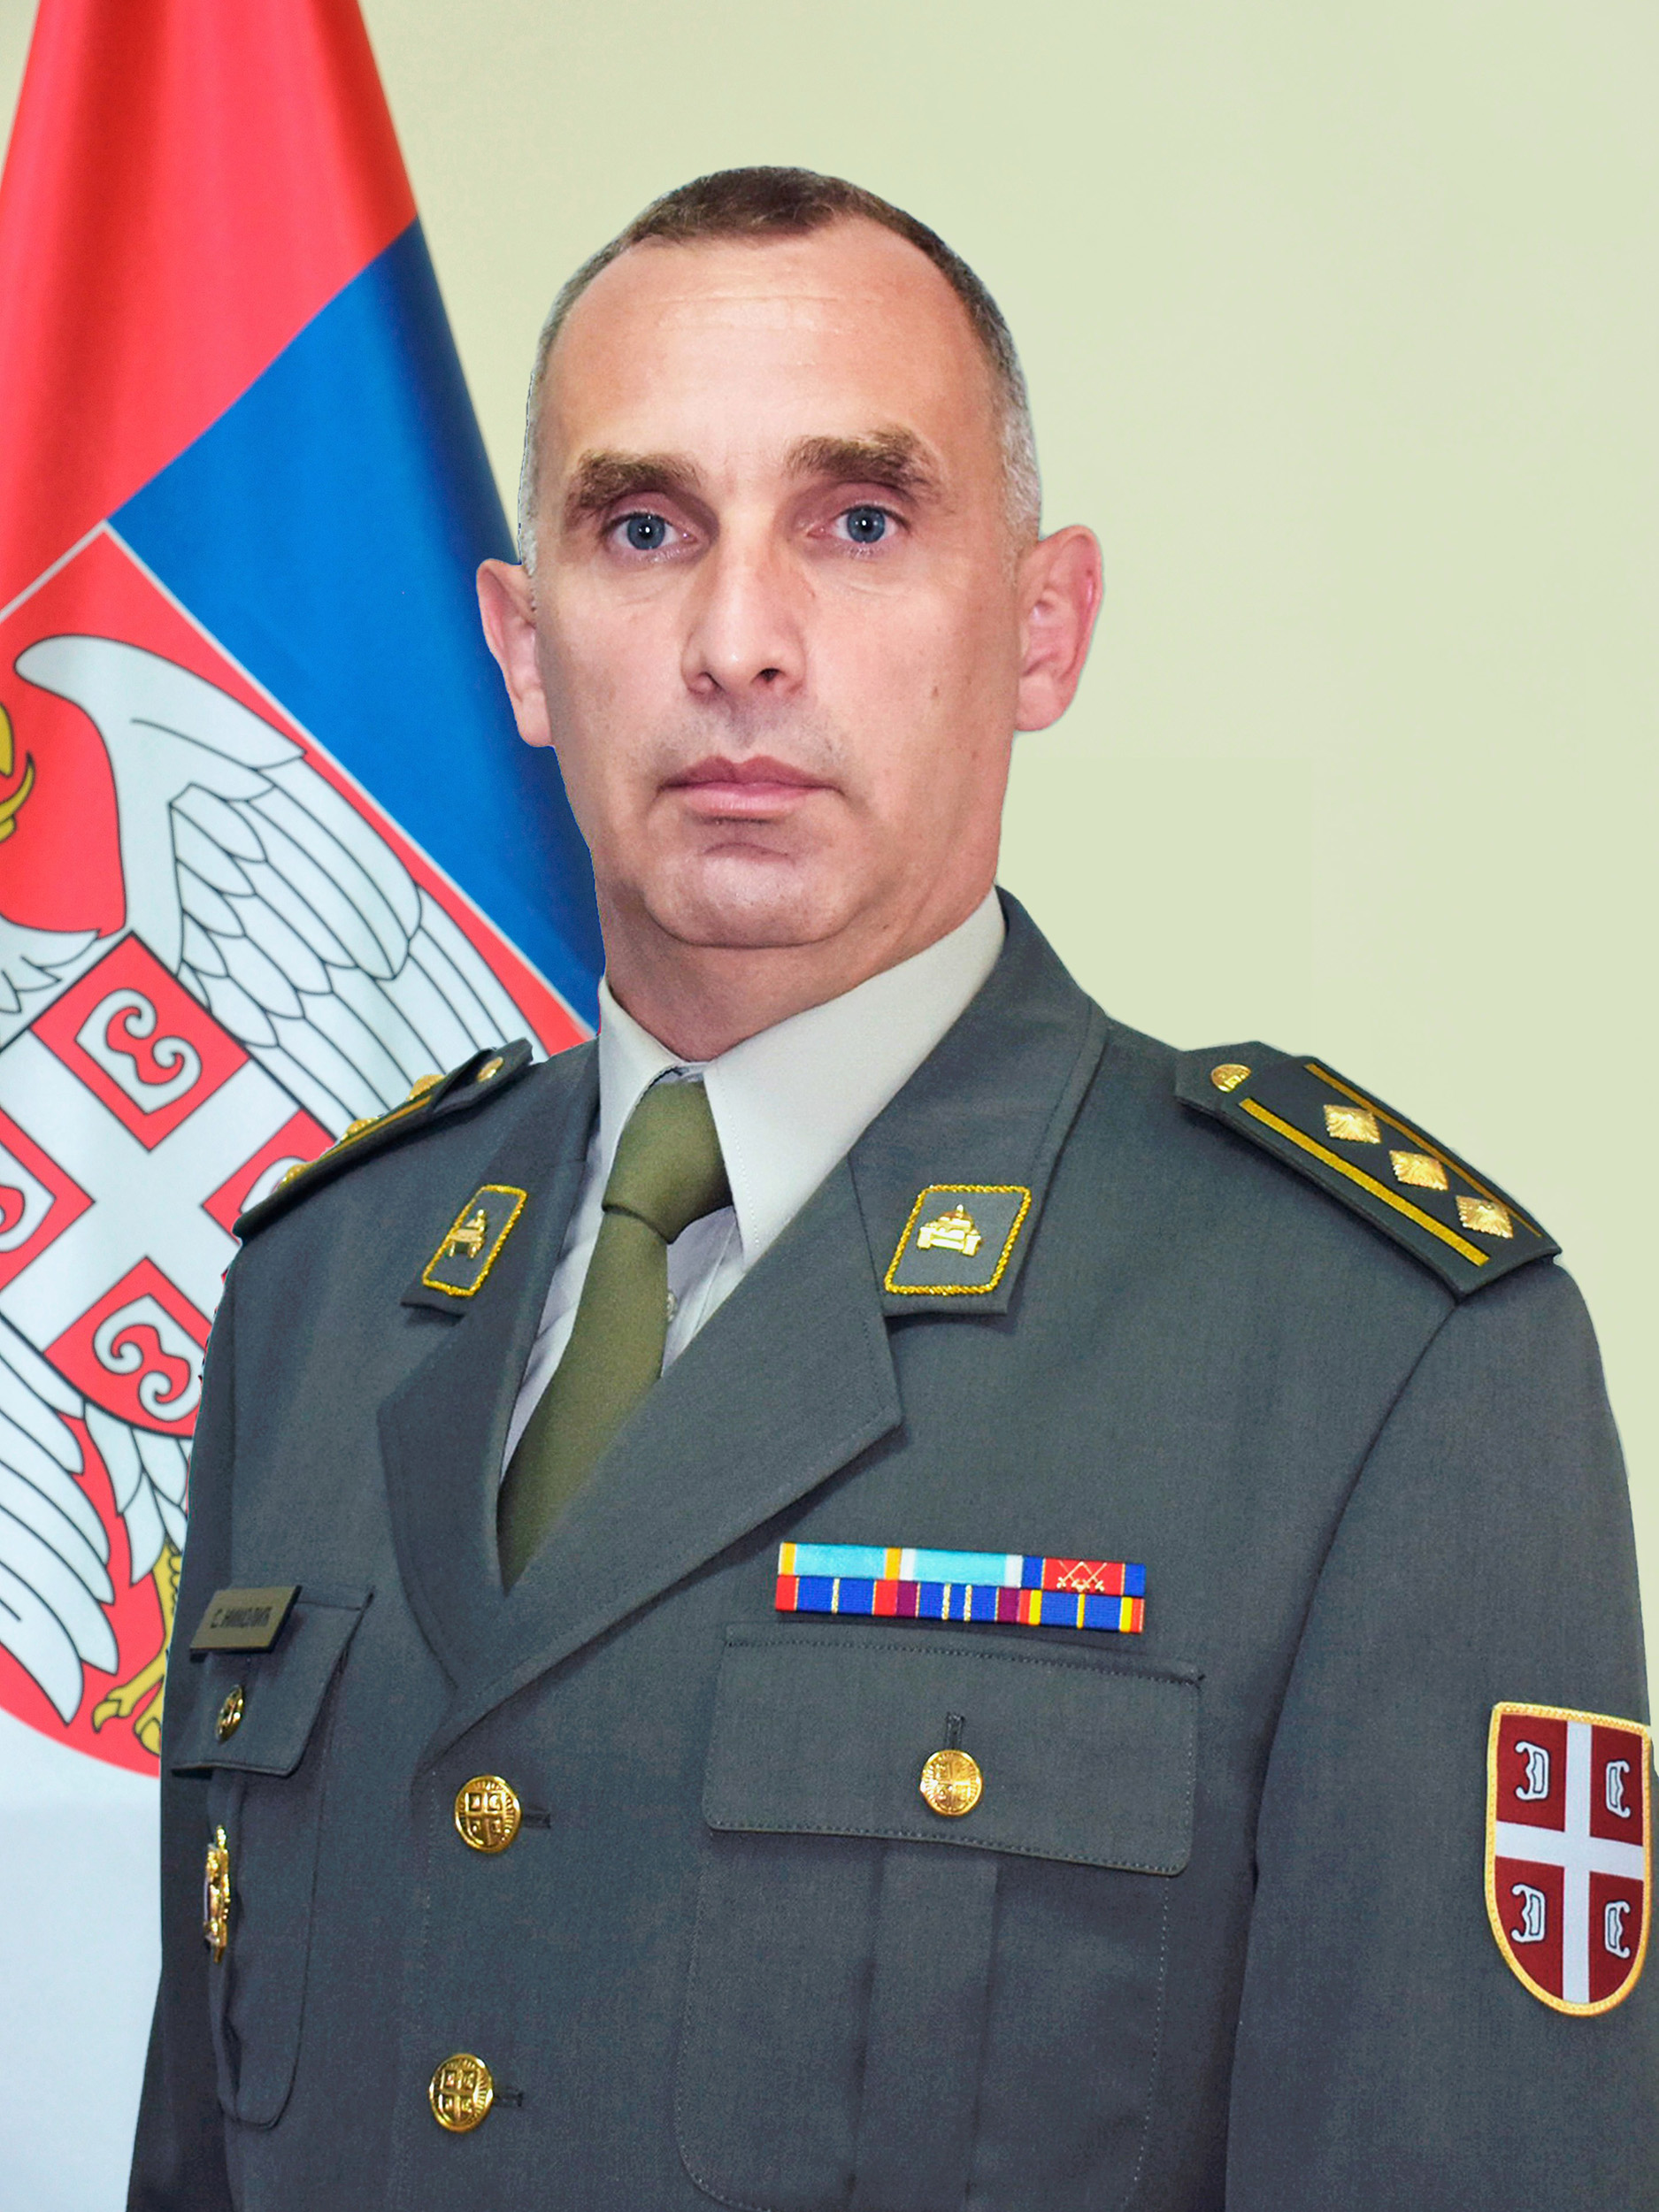 Colonel Siniša Nikolić